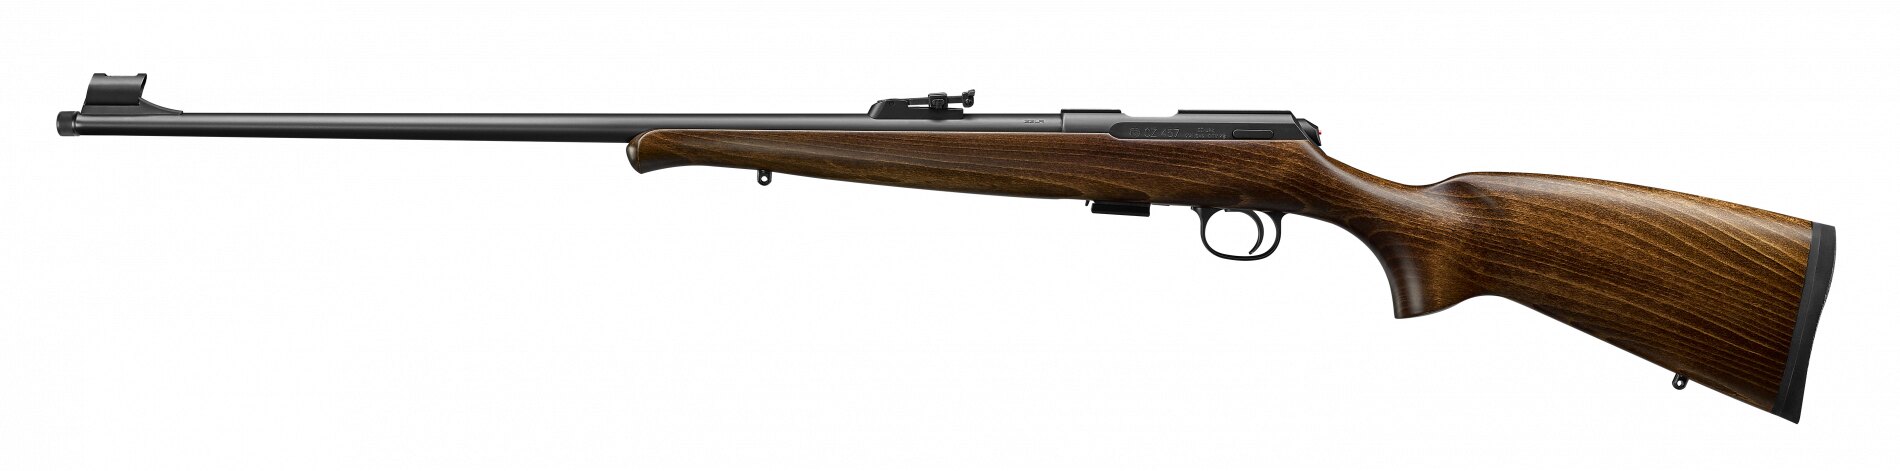 Levně Malorážka CZ 457 Training Rifle / ráže .22 LR CZUB® – Hnědá